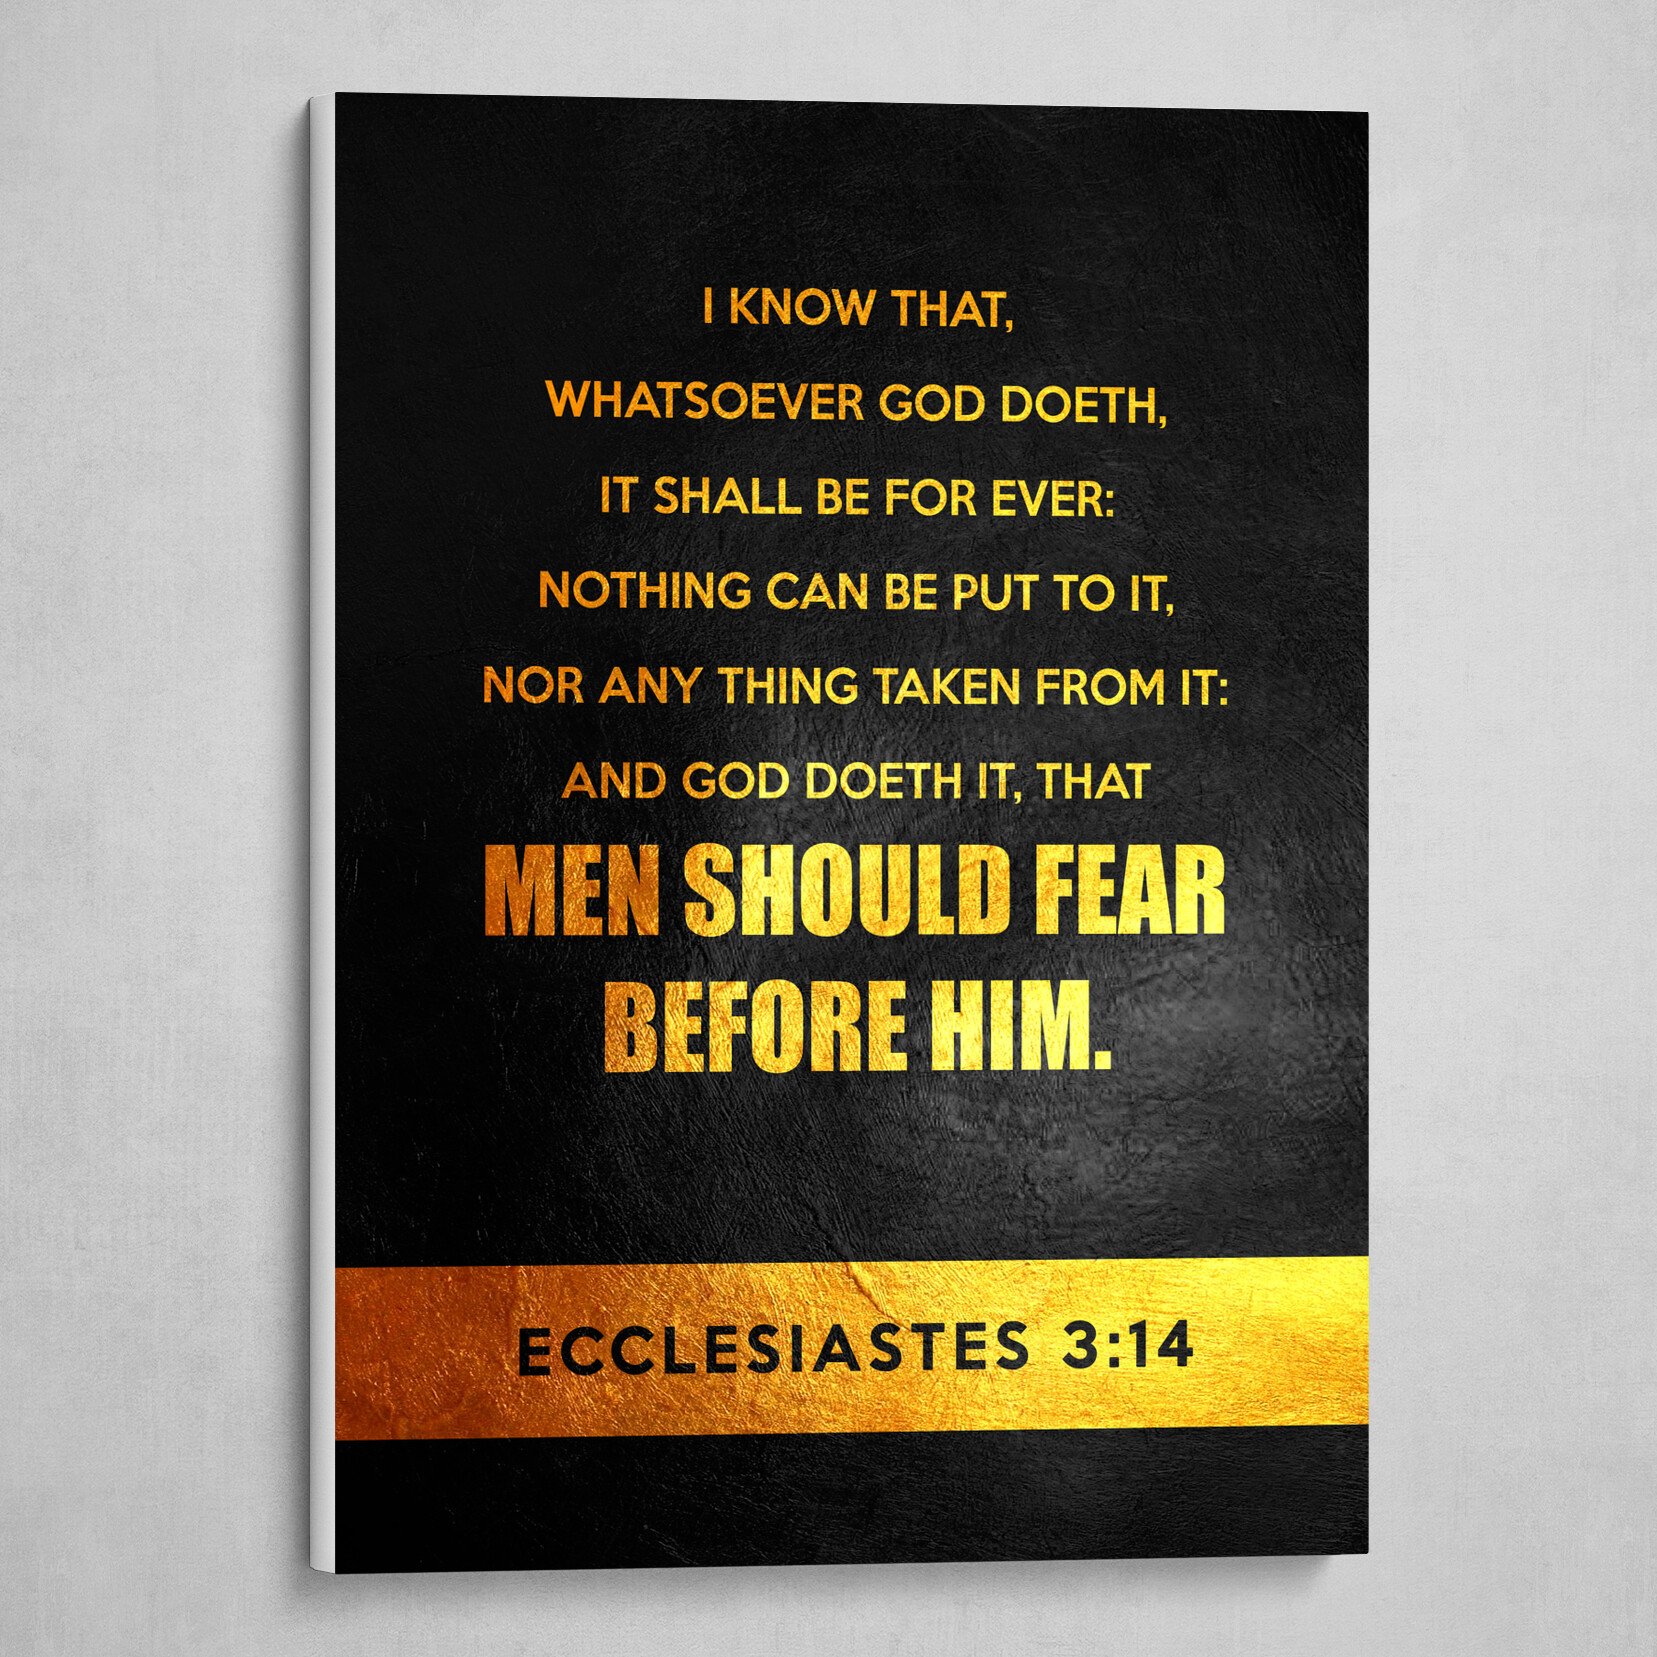 Ecclesiastes 3:14 Bible Verse Text Art